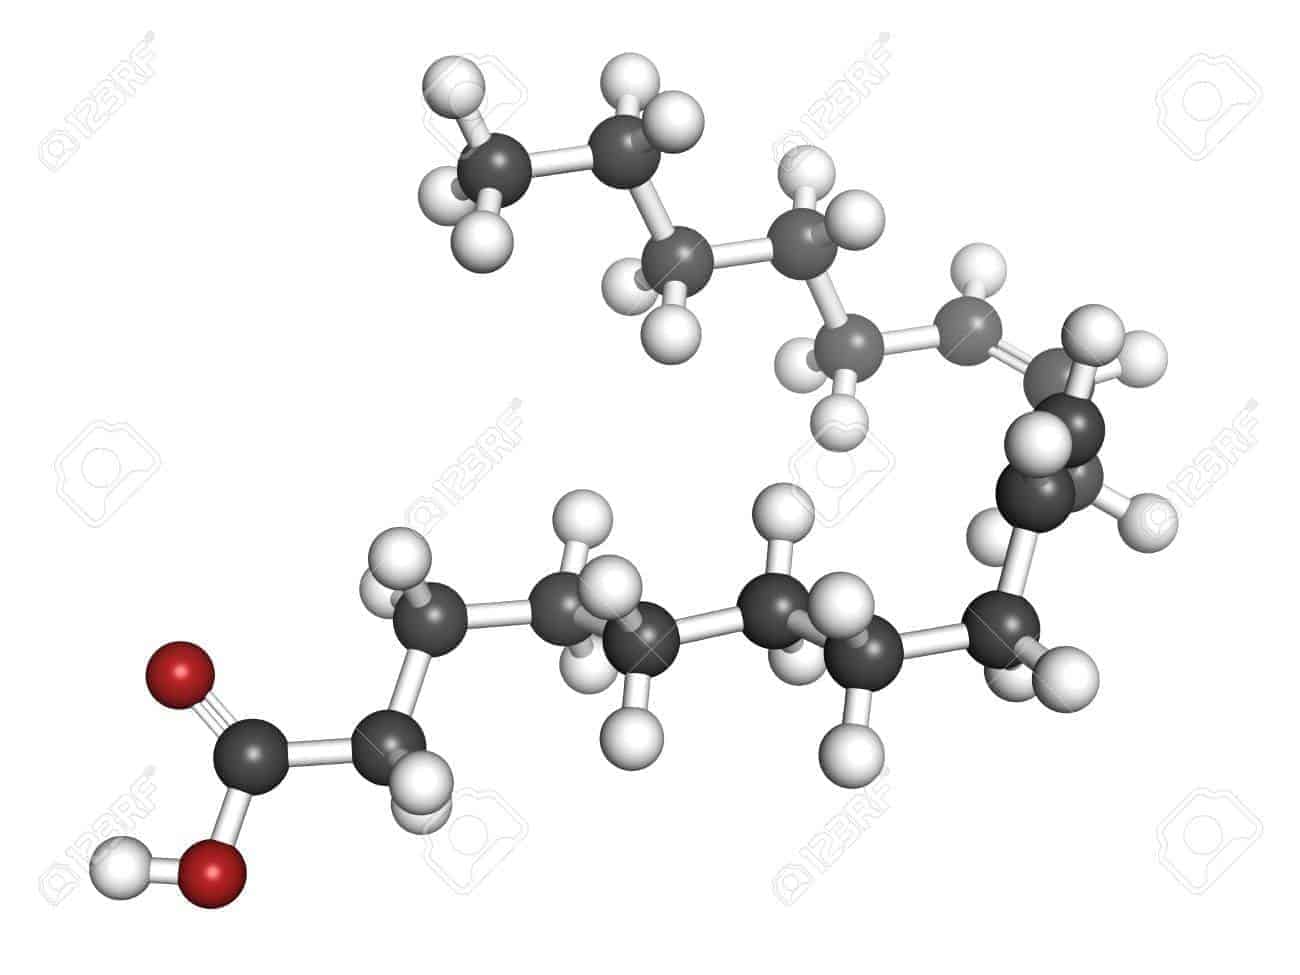 18212788 omega 6 acide gras insature acide linoleique la le modele moleculaire les atomes sont representes par des spheres av 20191115120343